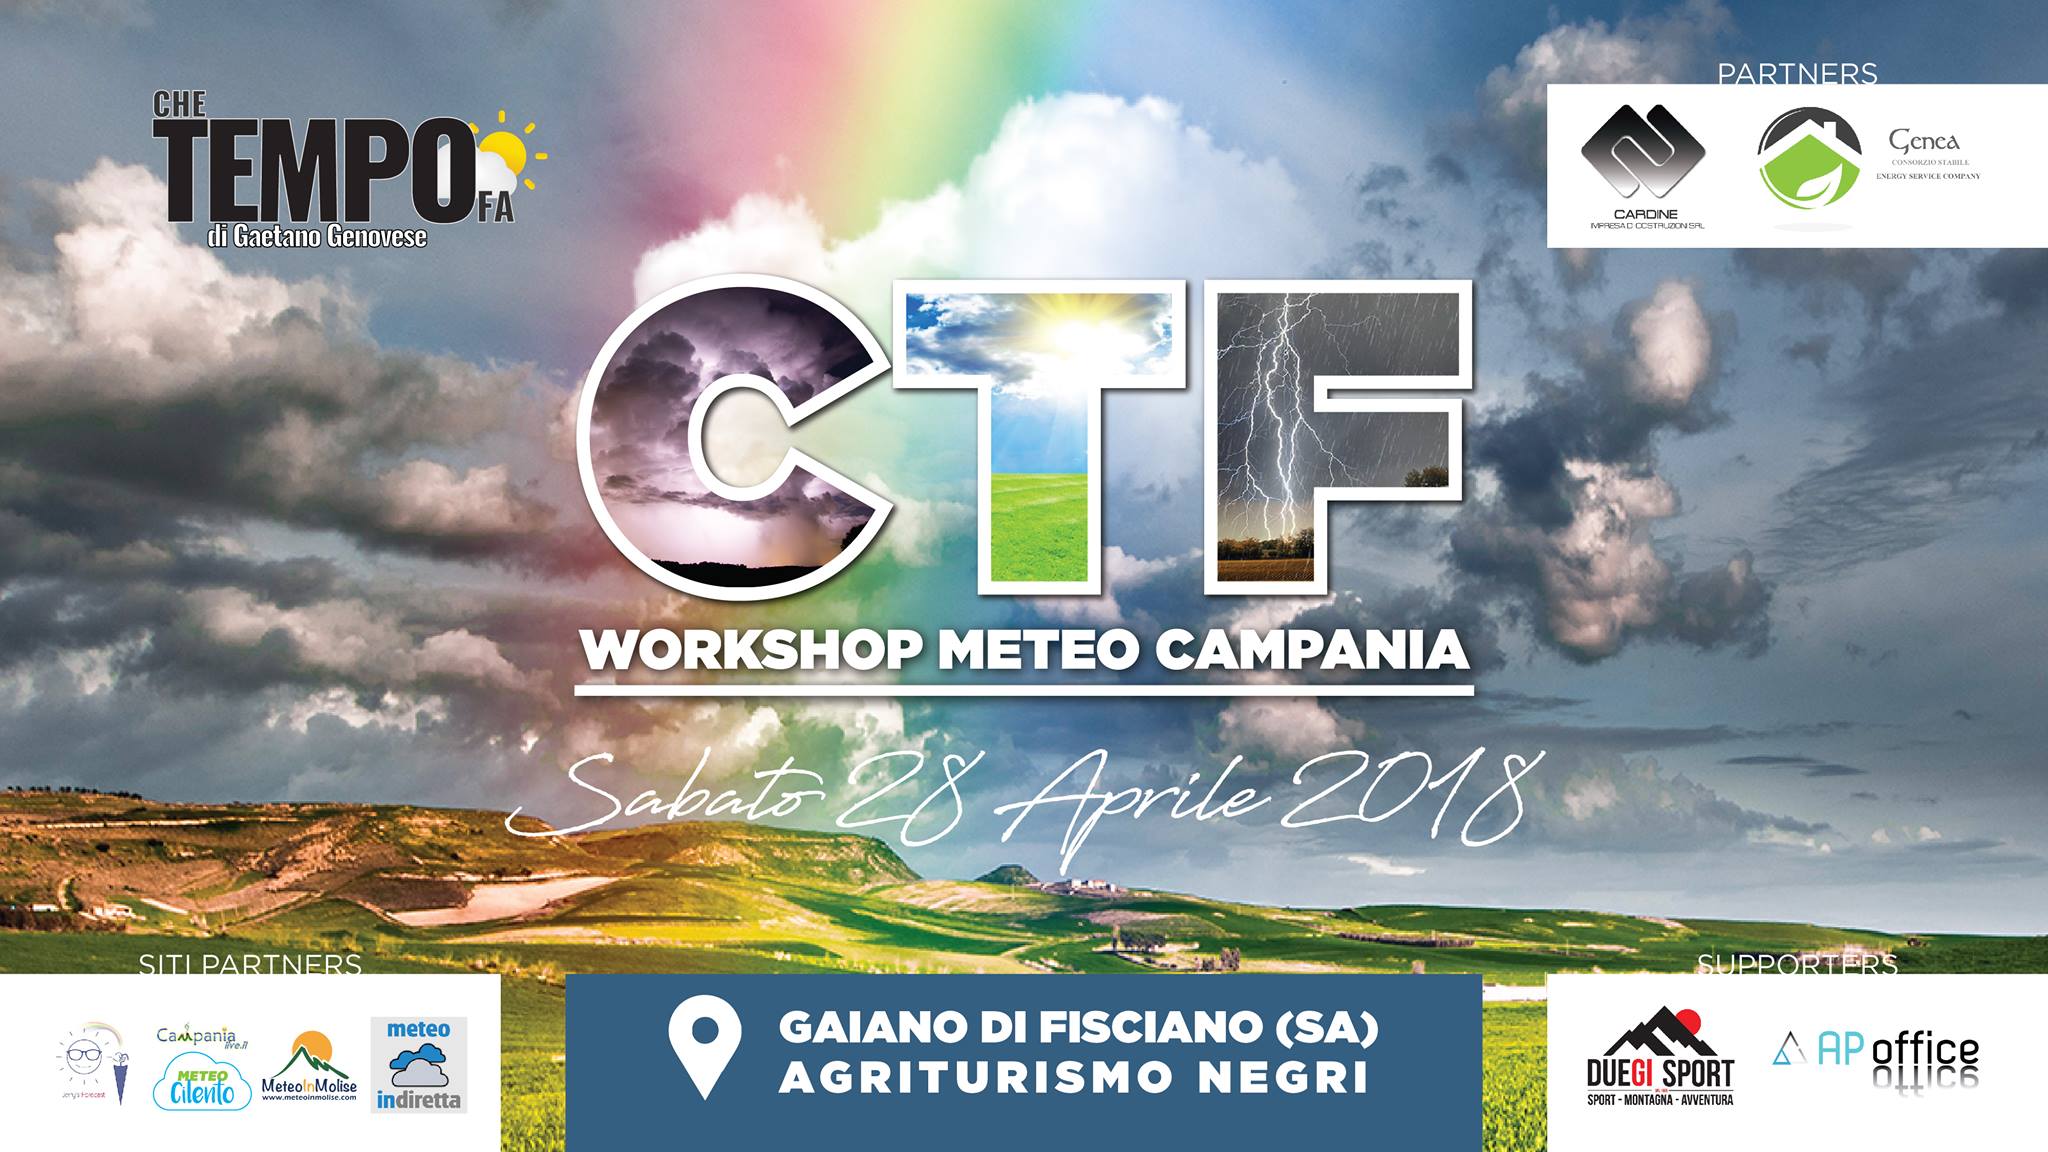 Genea Consorzio Stabile partner dell’evento “Workshop Meteo Campania”